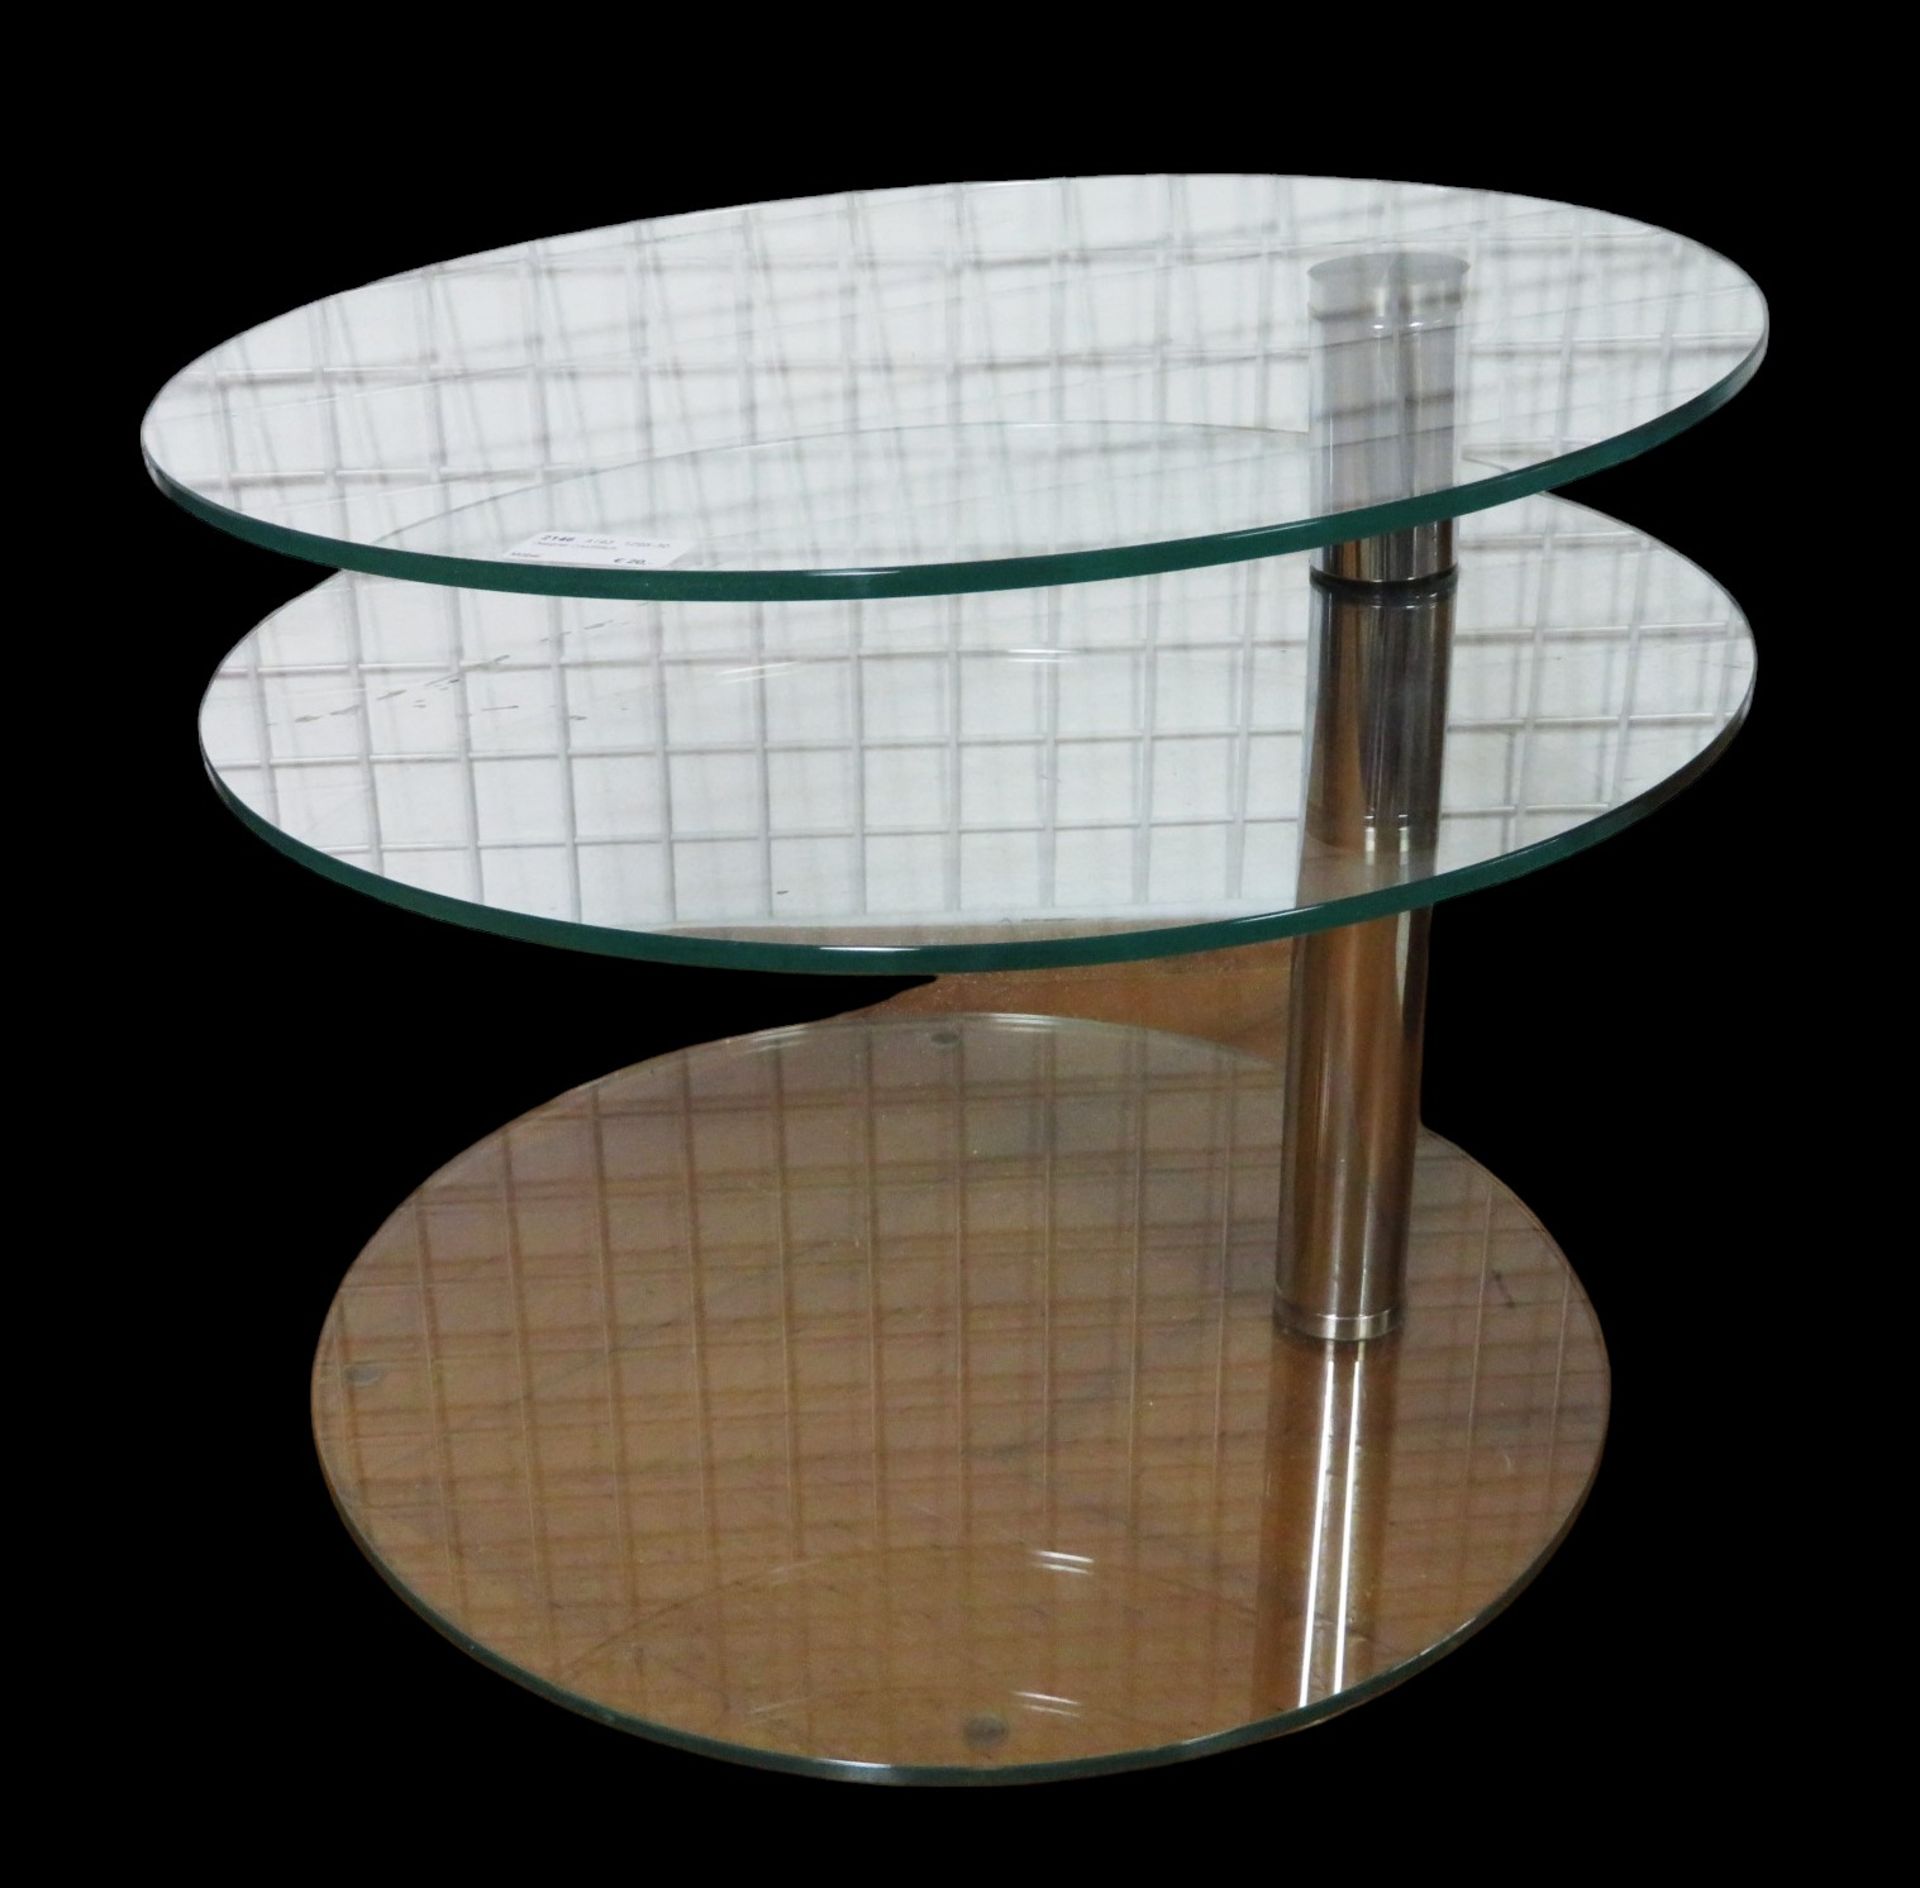 Designer Couchtisch, 2 bewegliche Glas-Tablare, Gebrauchsspuren, h 42 cm, d 50 cm.